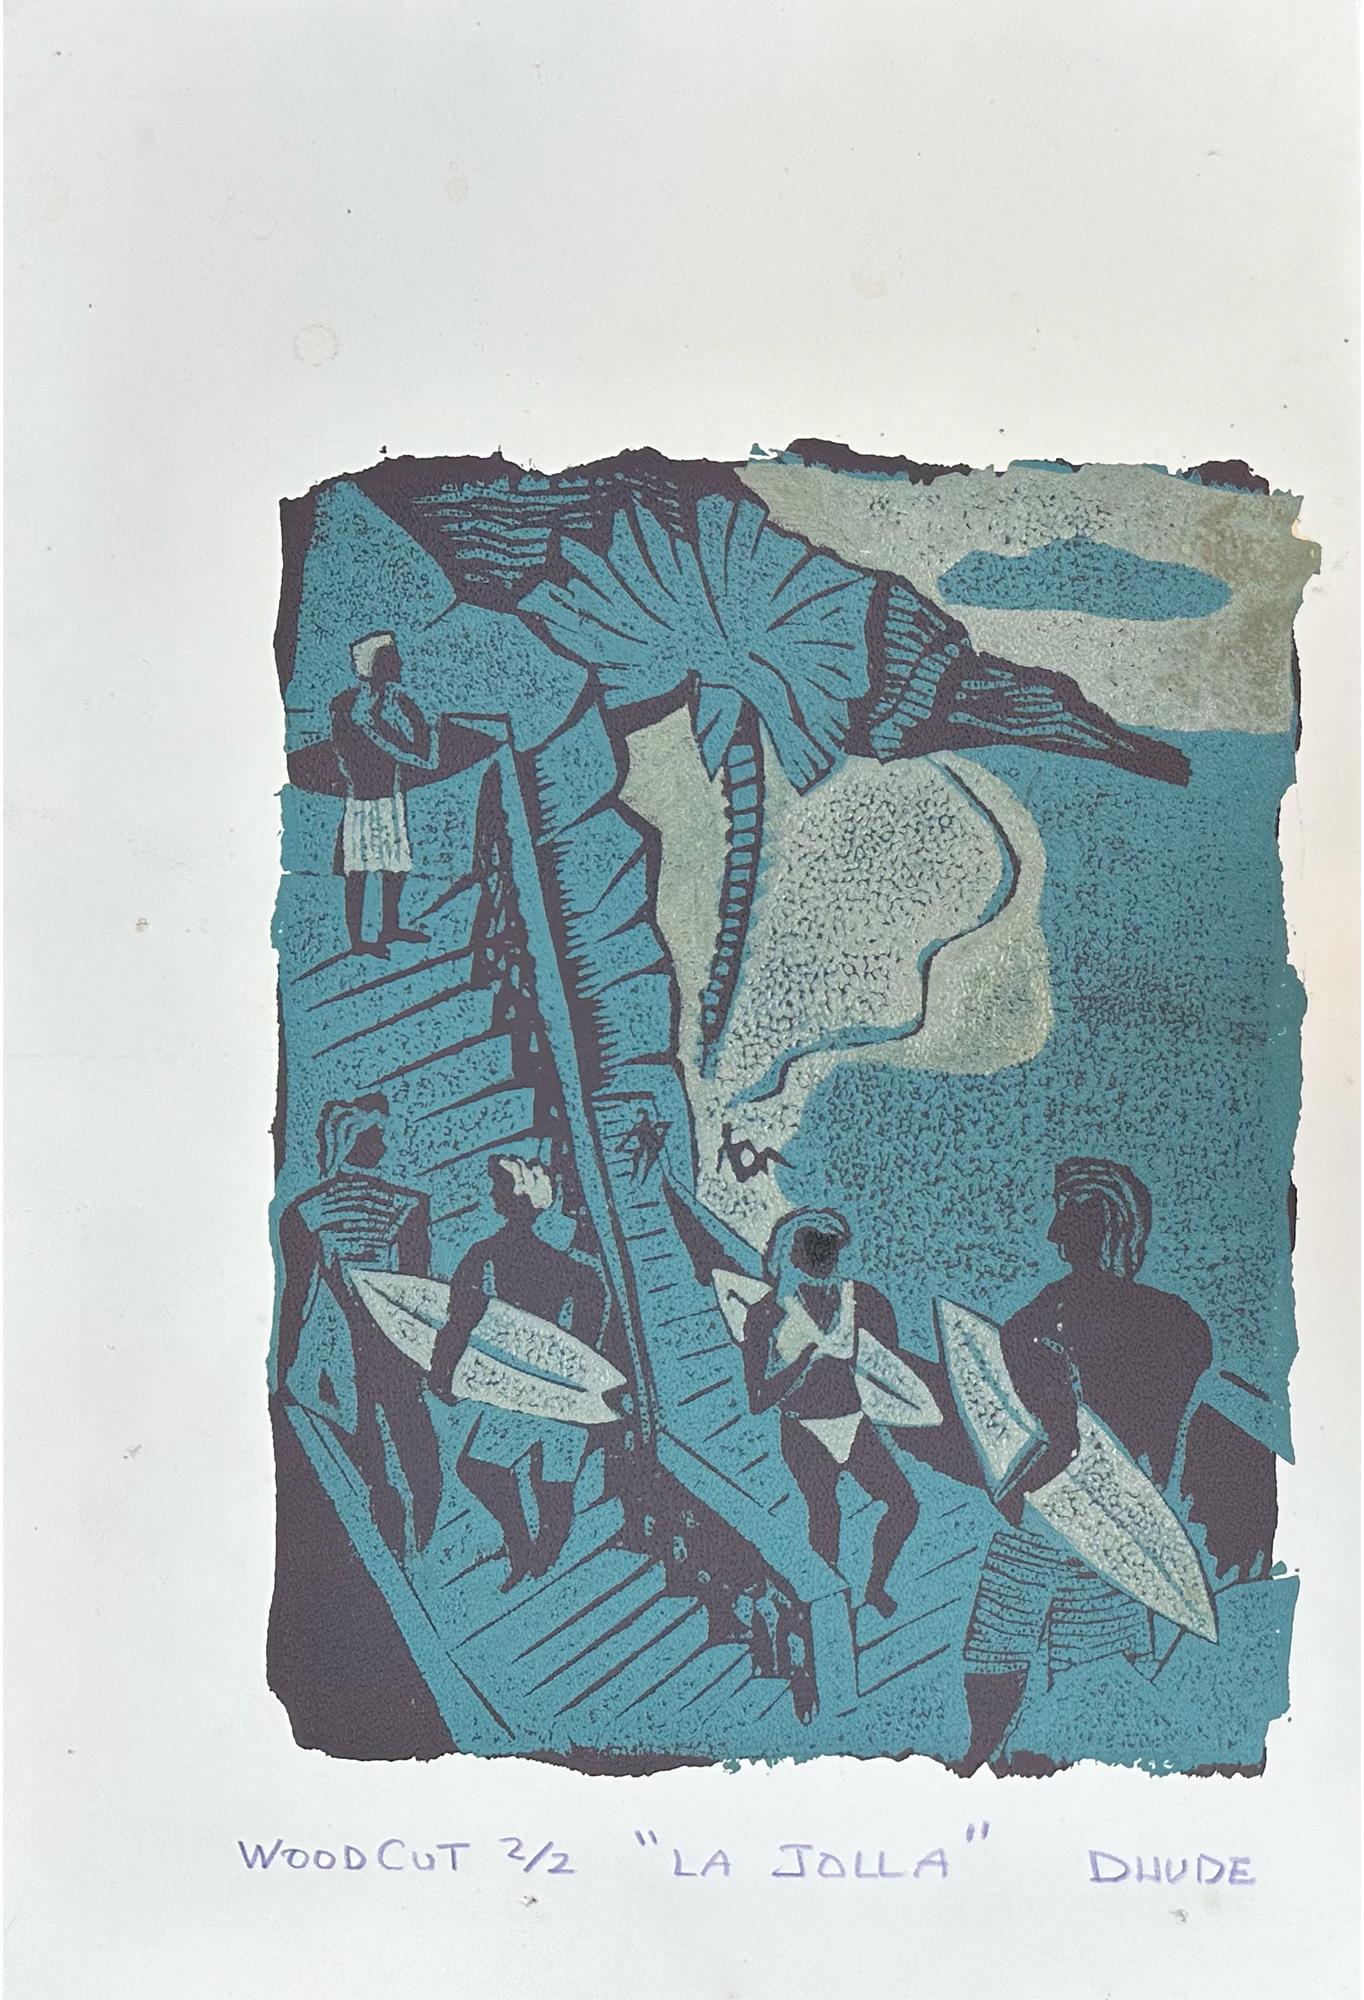 La Jolla - Surfing Art - Figurative - Woodcut Print By Marc Zimmerman

Édition limitée 01/04

Ce chef-d'œuvre est exposé à la Zimmerman Gallery (a) Gallery, Carmel CA.

Plongez dans l'univers captivant du surf et des vibrations de l'océan avec la